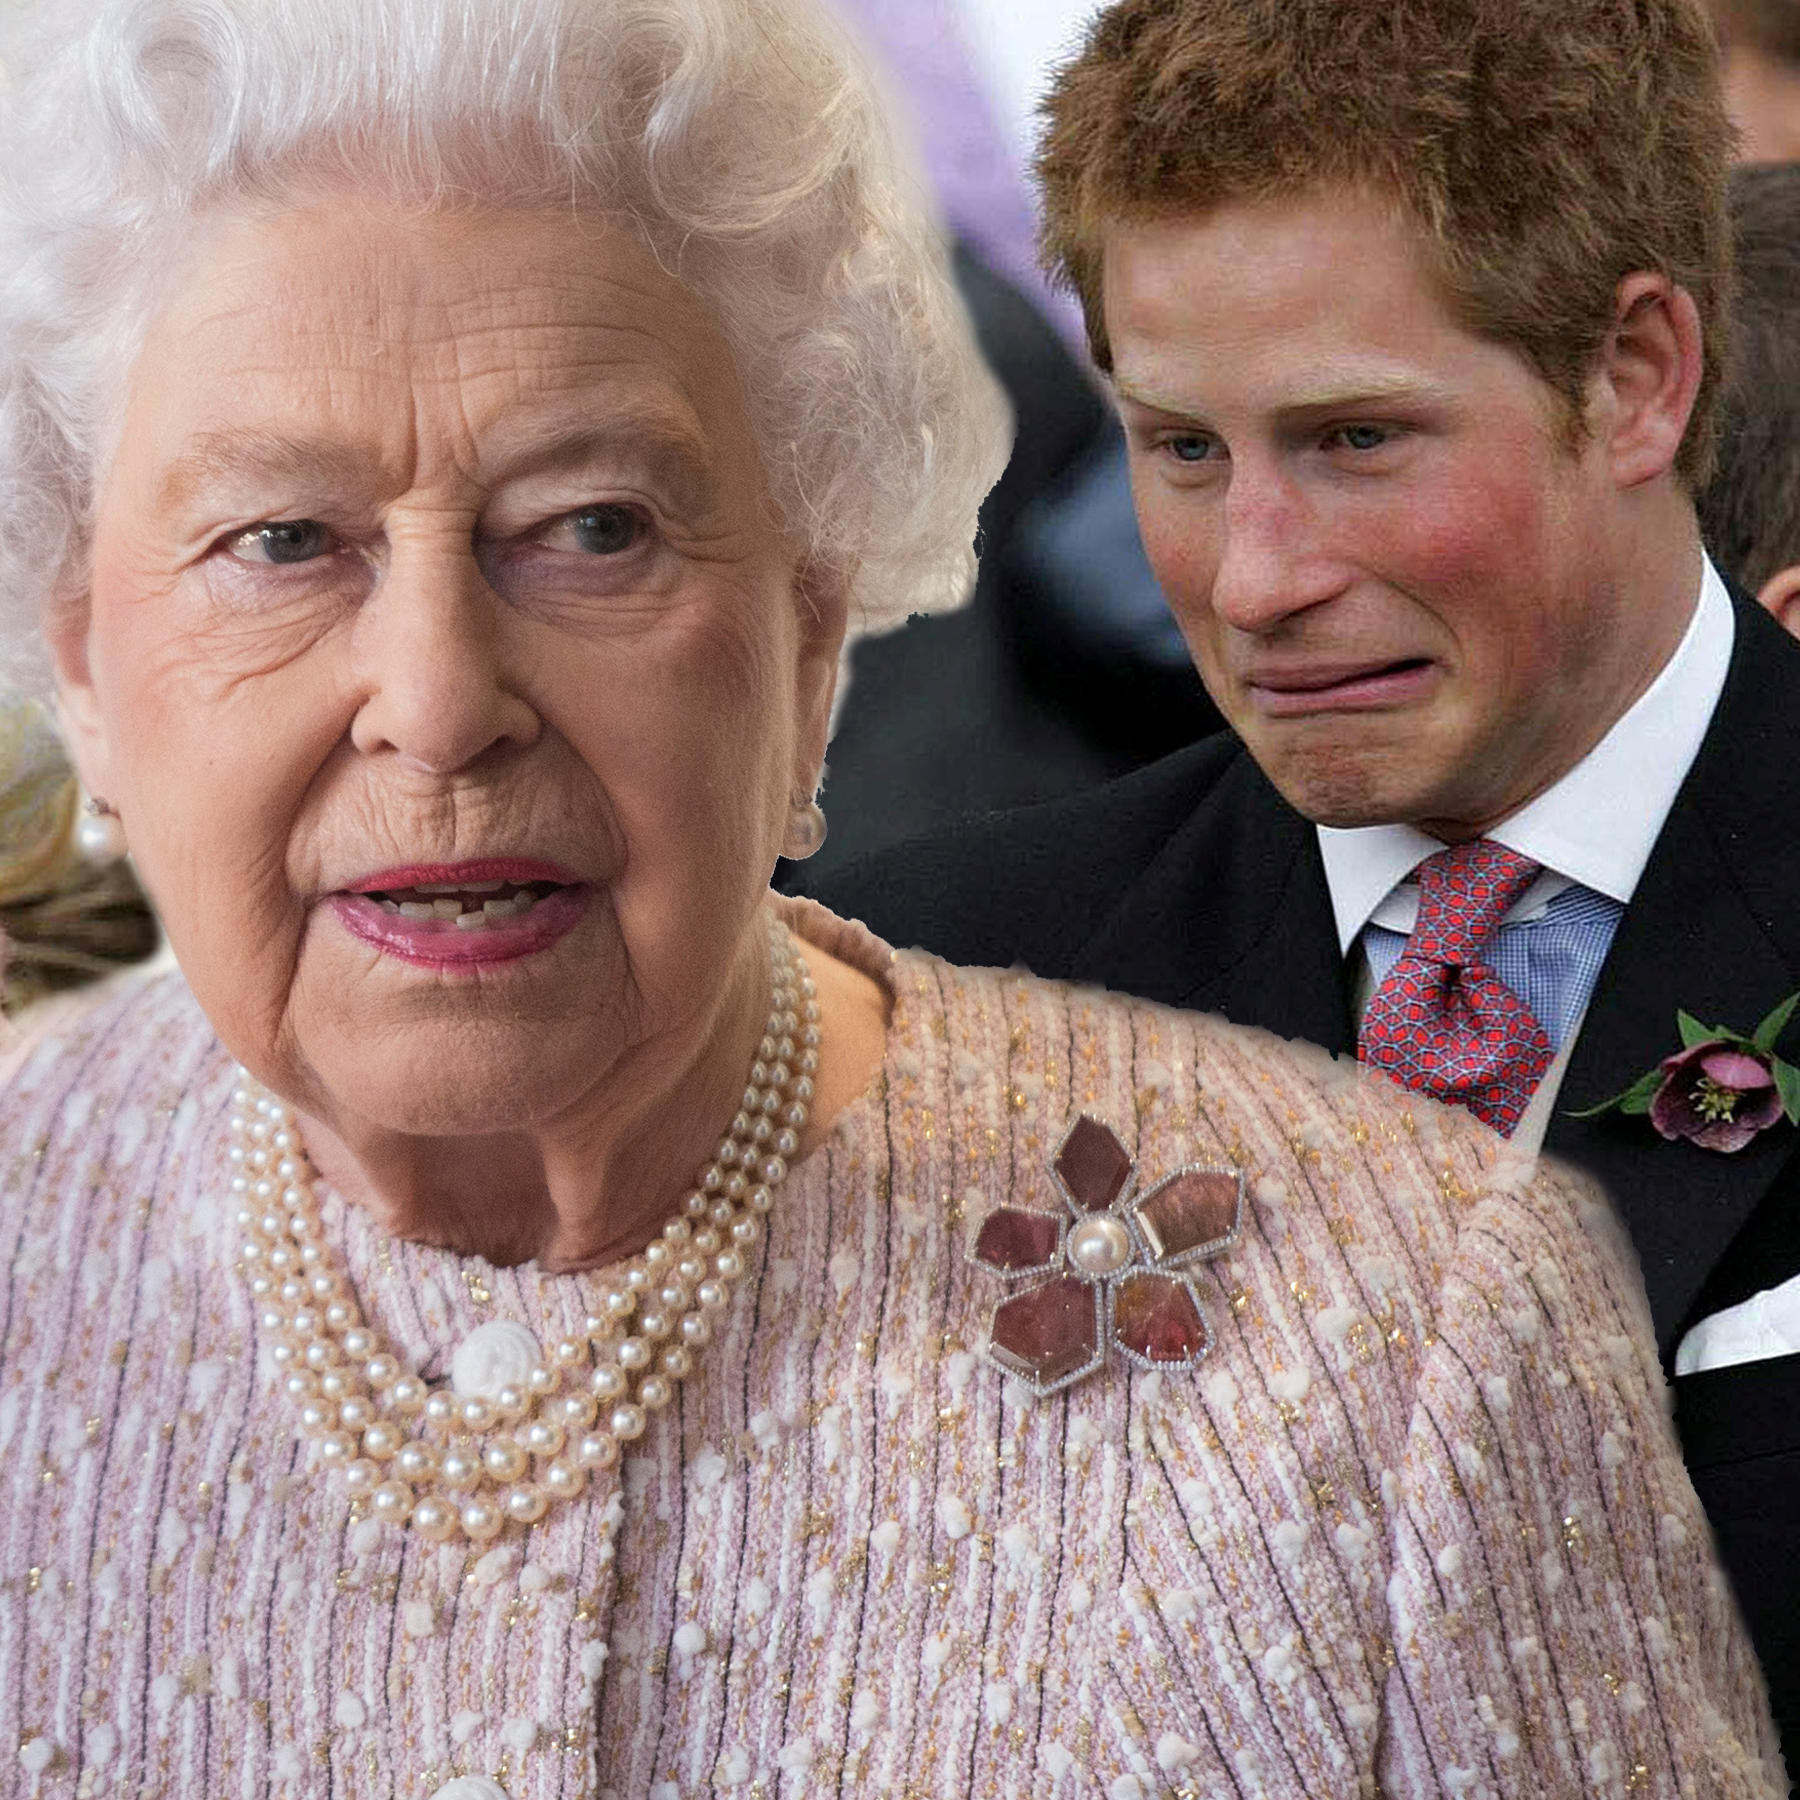 Hochzeit In England Prinz Harry
 Prinz Harry Meghan Markle Lässt Queen ihre Hochzeit